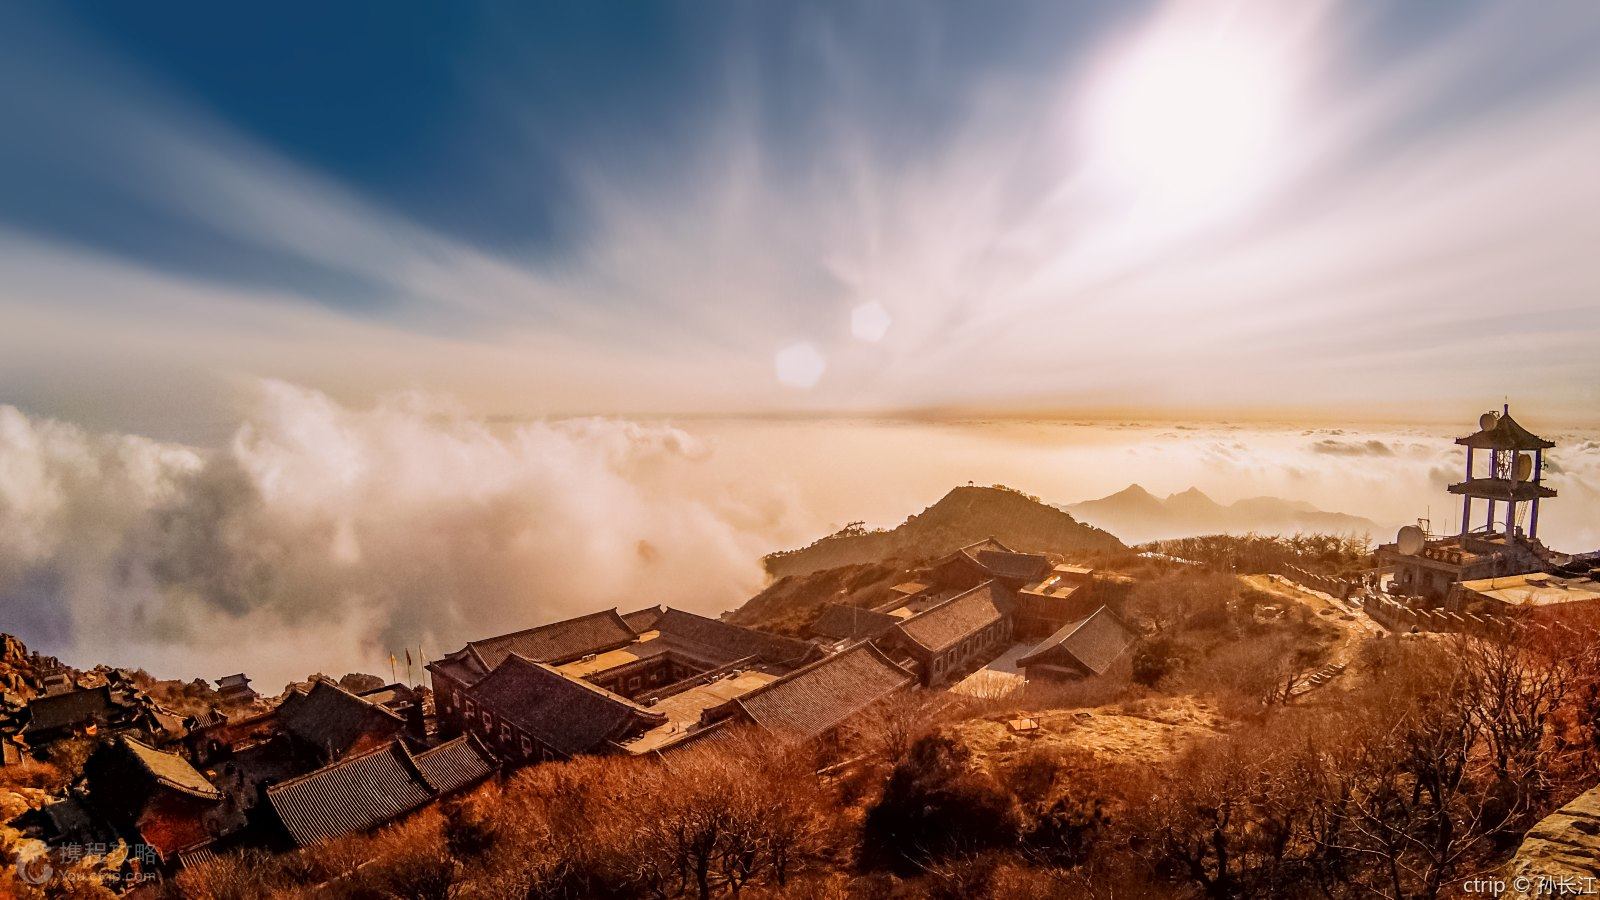 泰山风景名胜区(mount tai scenic spot):世界自然与文化双重遗产